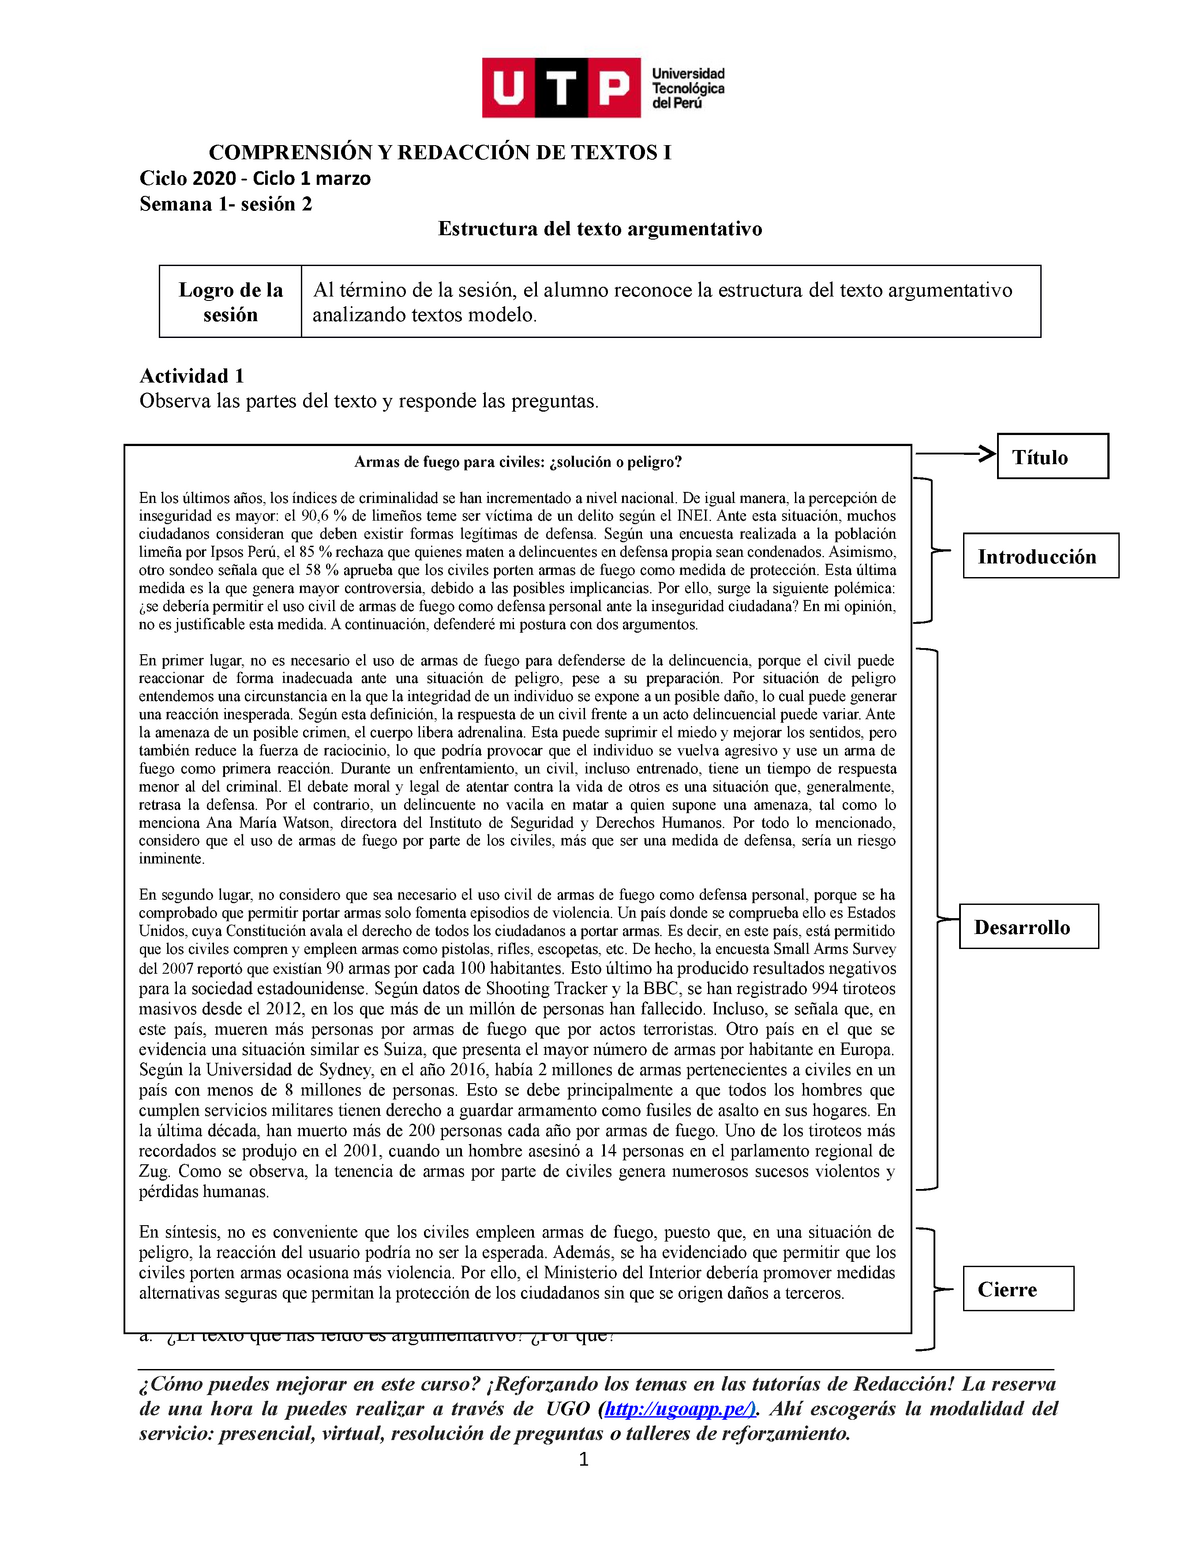 Estructura Del Texto Argumentativo ComprensiÓn Y RedacciÓn De Textos